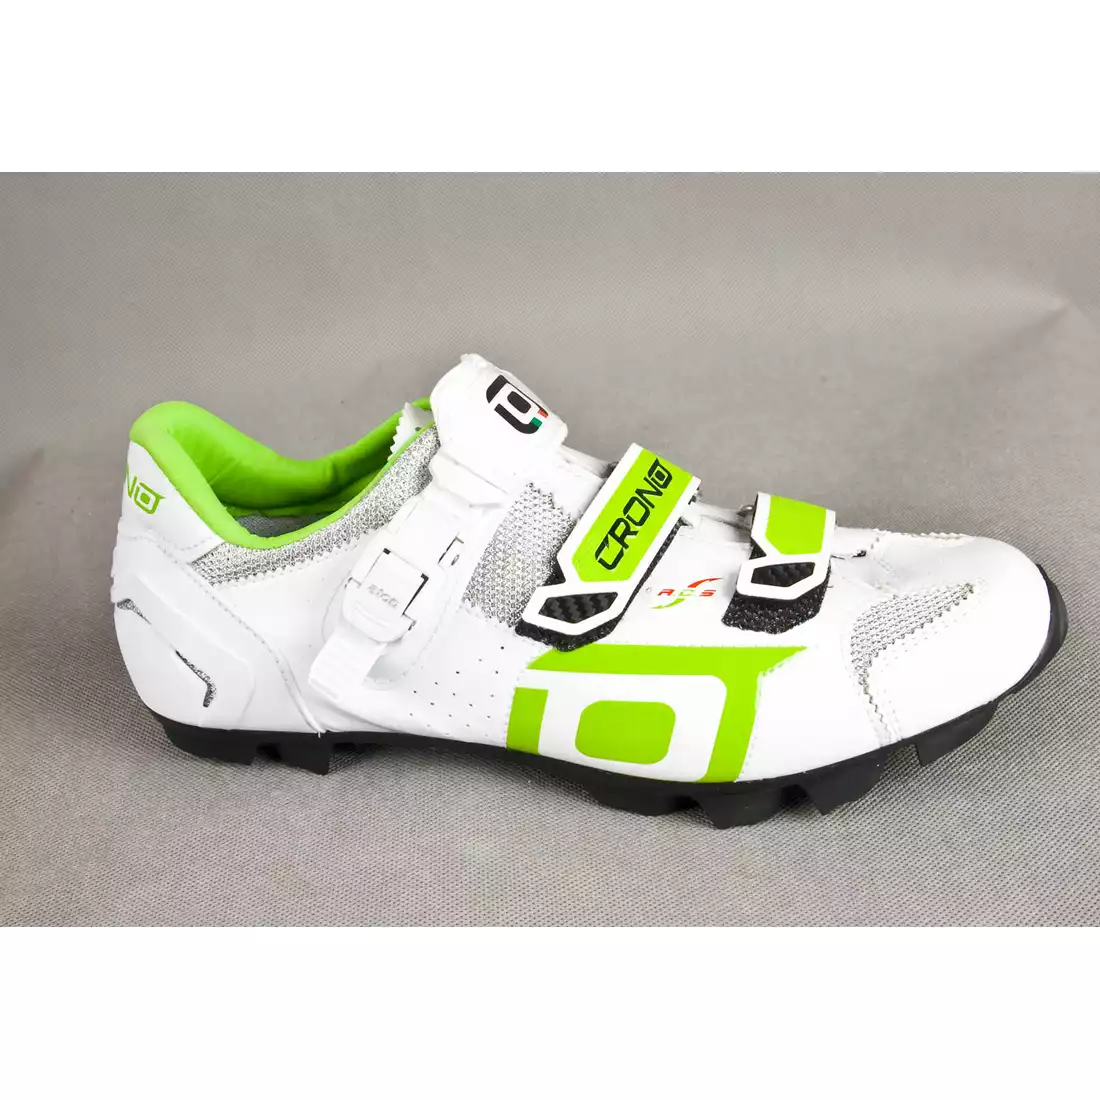 CRONO TRACK - buty rowerowe MTB - kolor: Biało-zielony